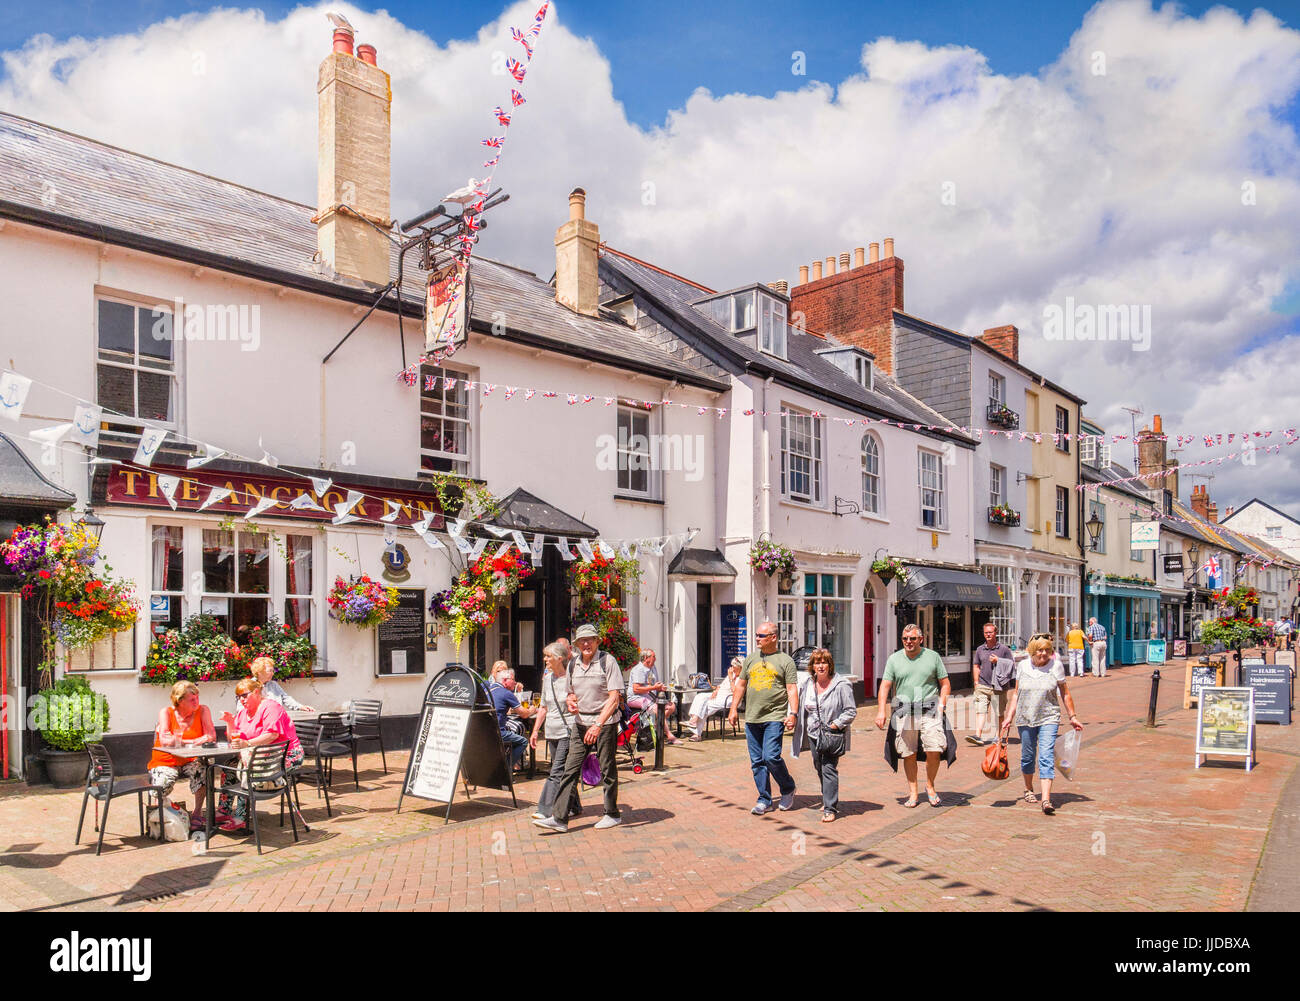 3 Juillet 2017 : la ville de Sidmouth, Dorset, England, UK - Shoppers dans Old Fore Street, à côté de l'Anchor Inn, le long d'une journée d'été en juillet. Banque D'Images